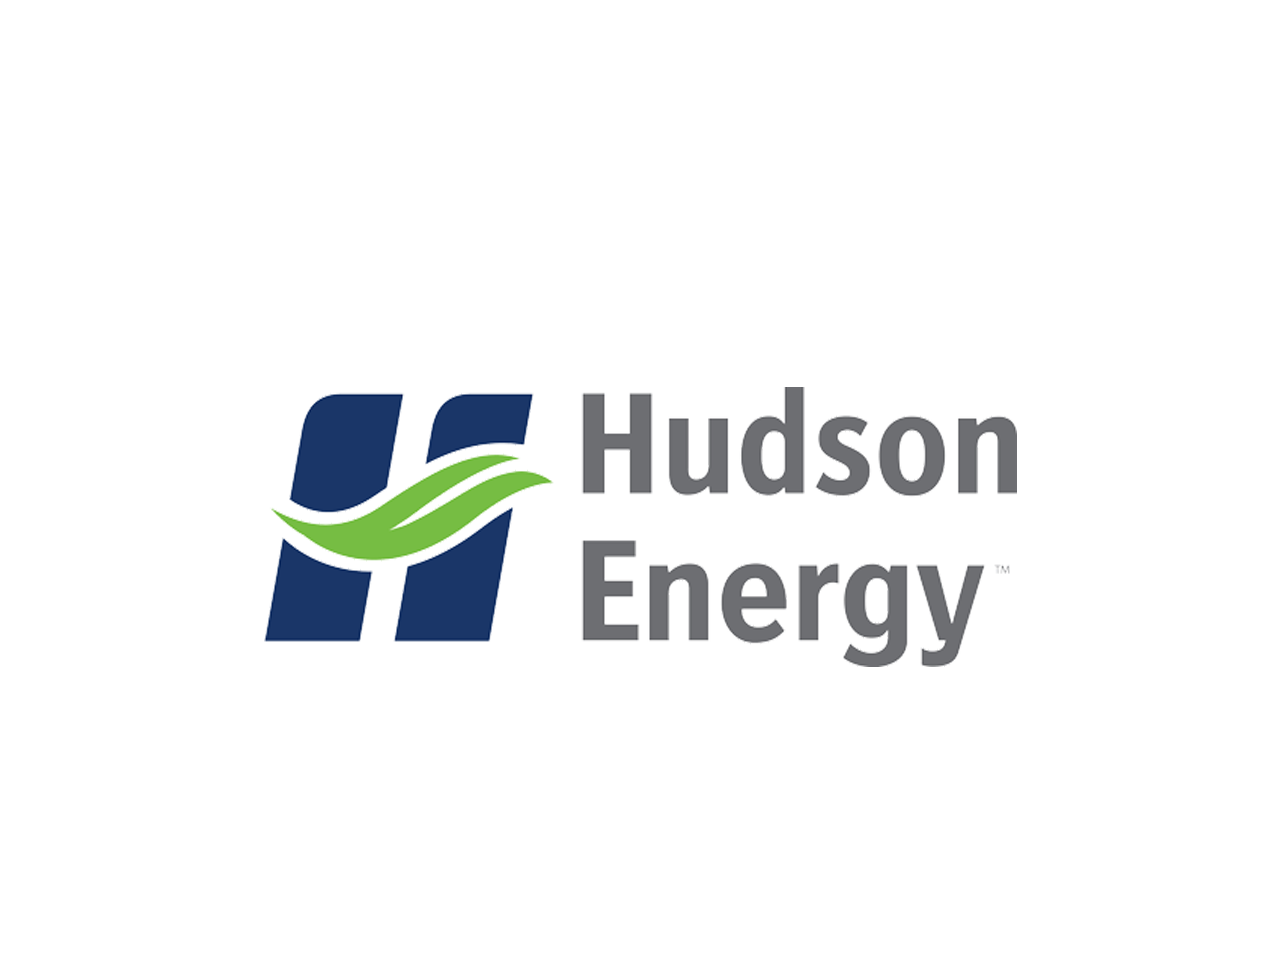 Hudson Energy